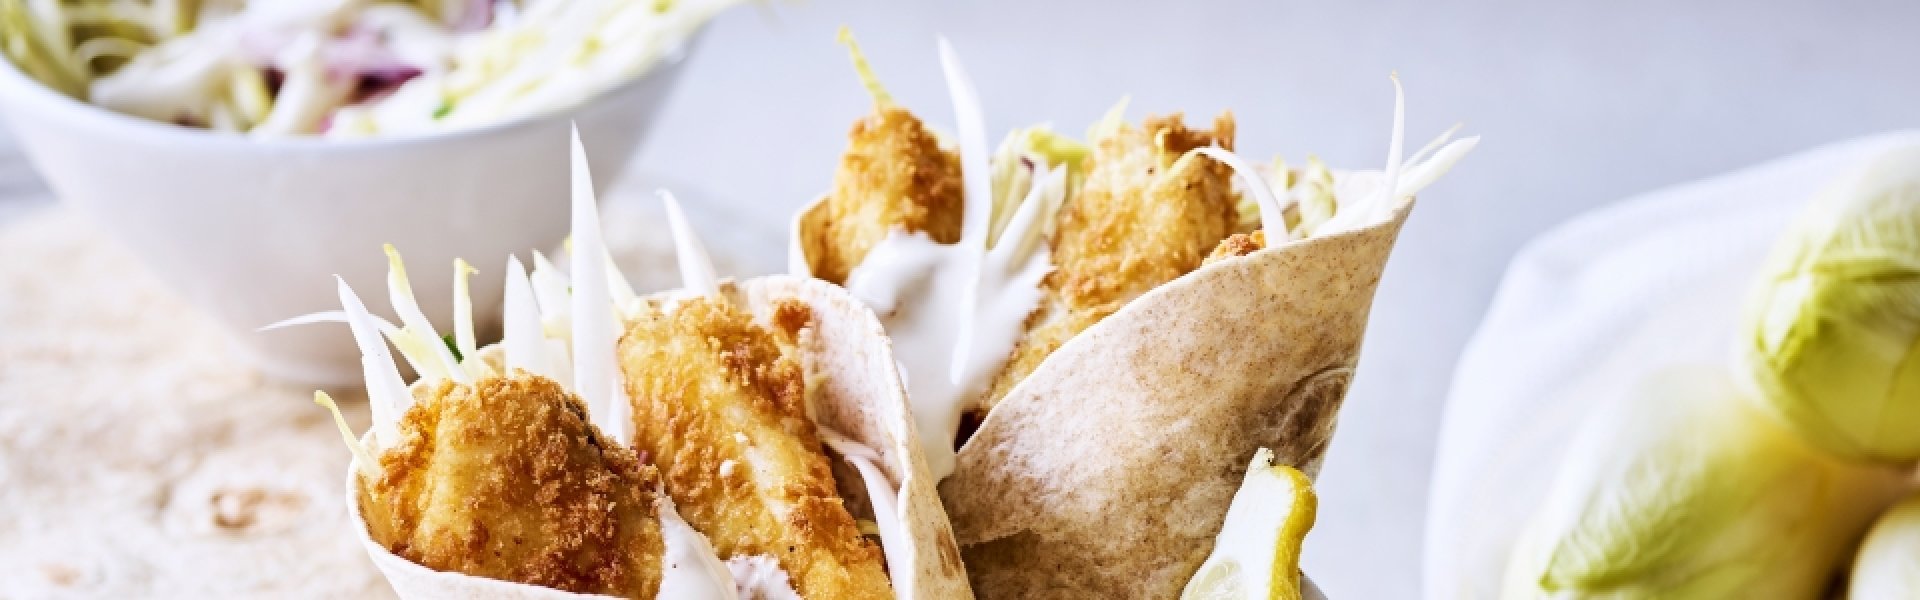 Taco's met gepaneerde visreepjes en frisse witloofsalade